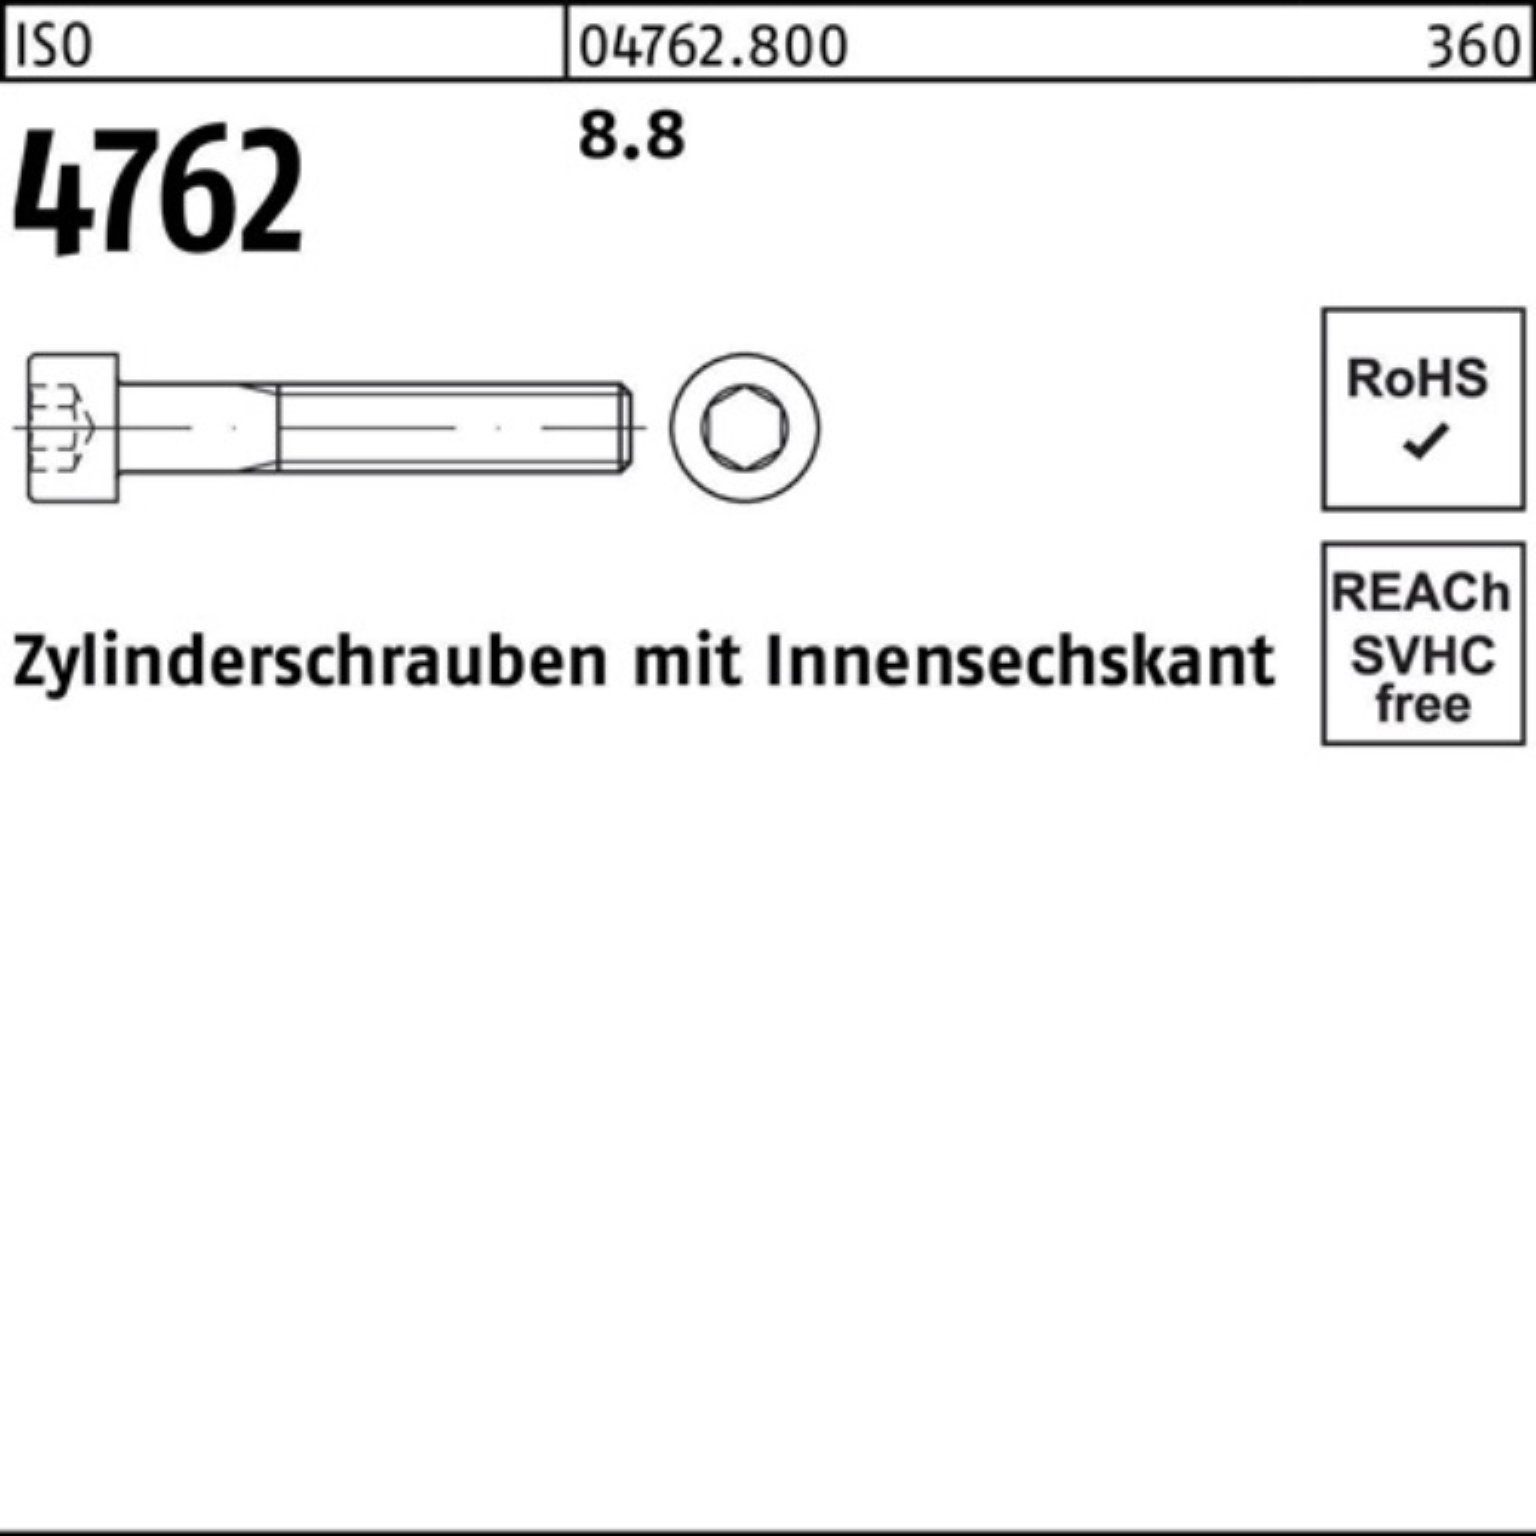 Reyher Zylinderschraube 100er Pack Stück Zylinderschraube 320 4762 8.8 M36x 1 Innen-6kt I ISO